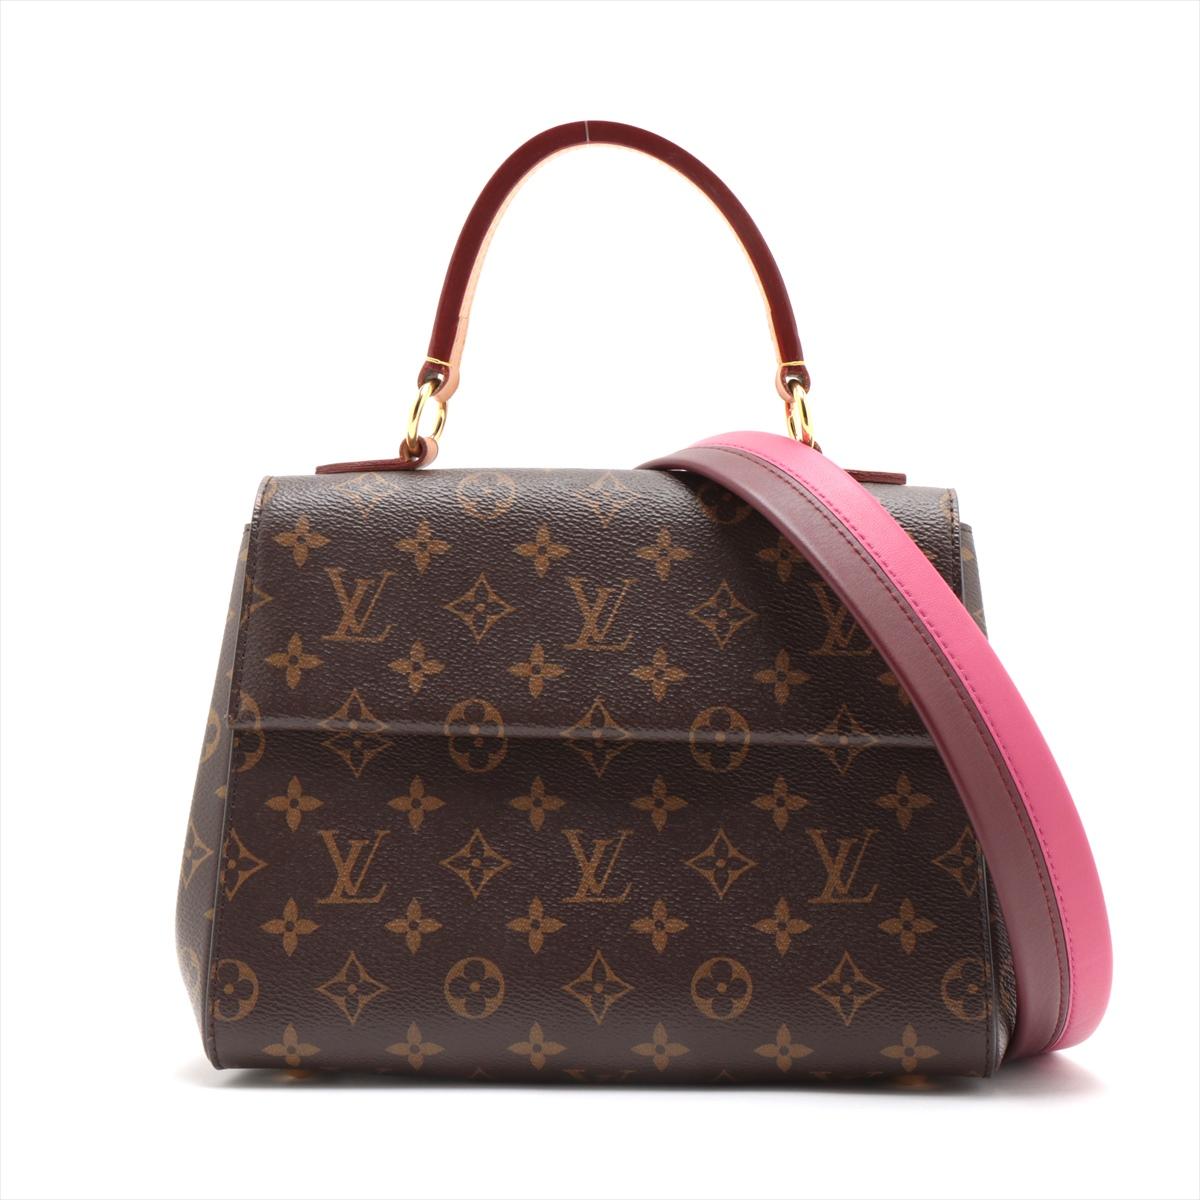 Die Louis Vuitton Monogram Cluny BB ist eine elegante und kompakte Handtasche für die moderne Frau. Gefertigt aus dem kultigen Louis Vuitton Monogram Canvas. Die Tasche hat eine strukturierte Silhouette mit Glattlederbesatz. Die goldfarbenen